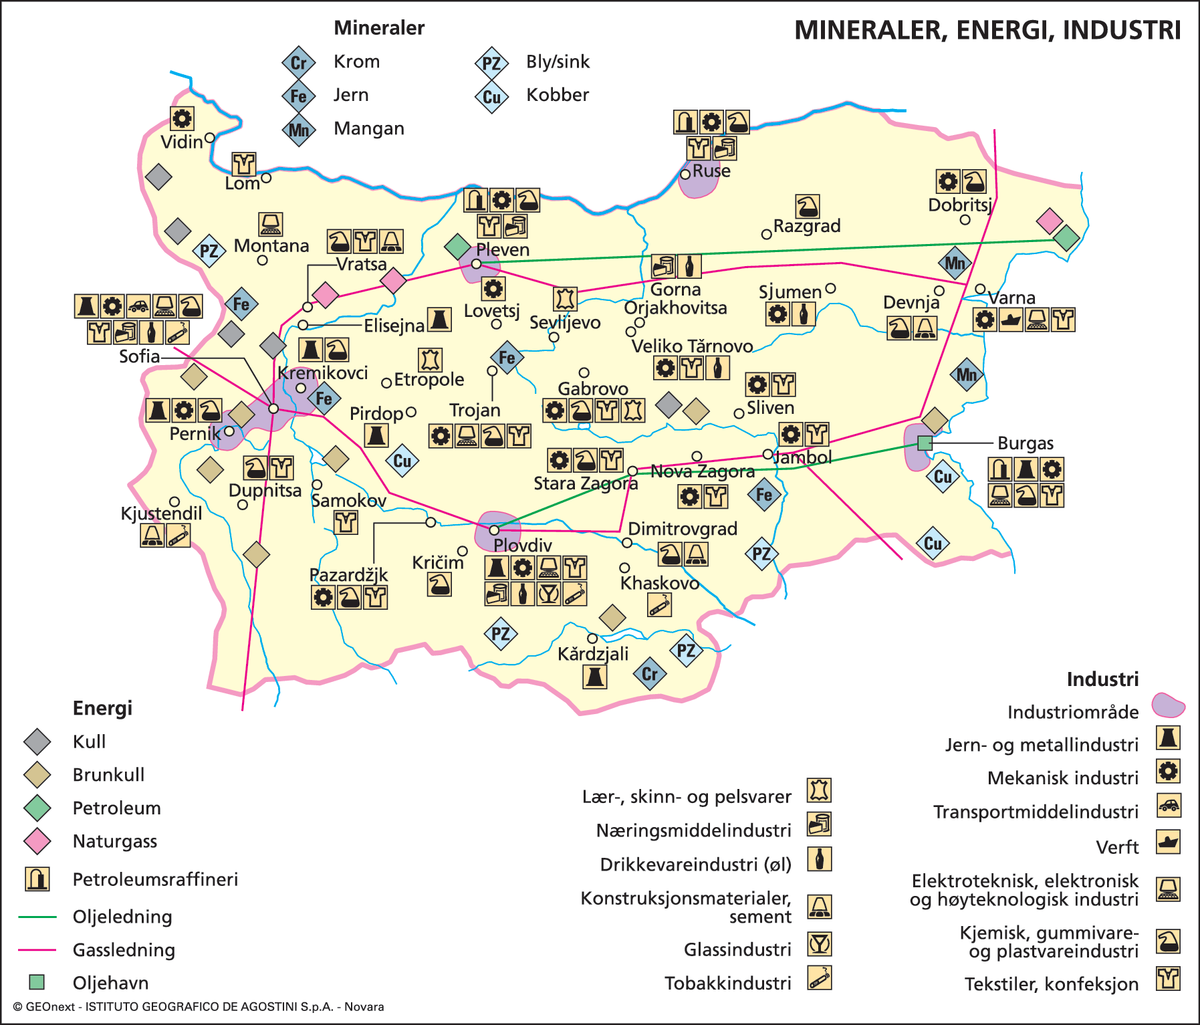 Bulgaria (Næringsliv) (mineraler,energi og industri